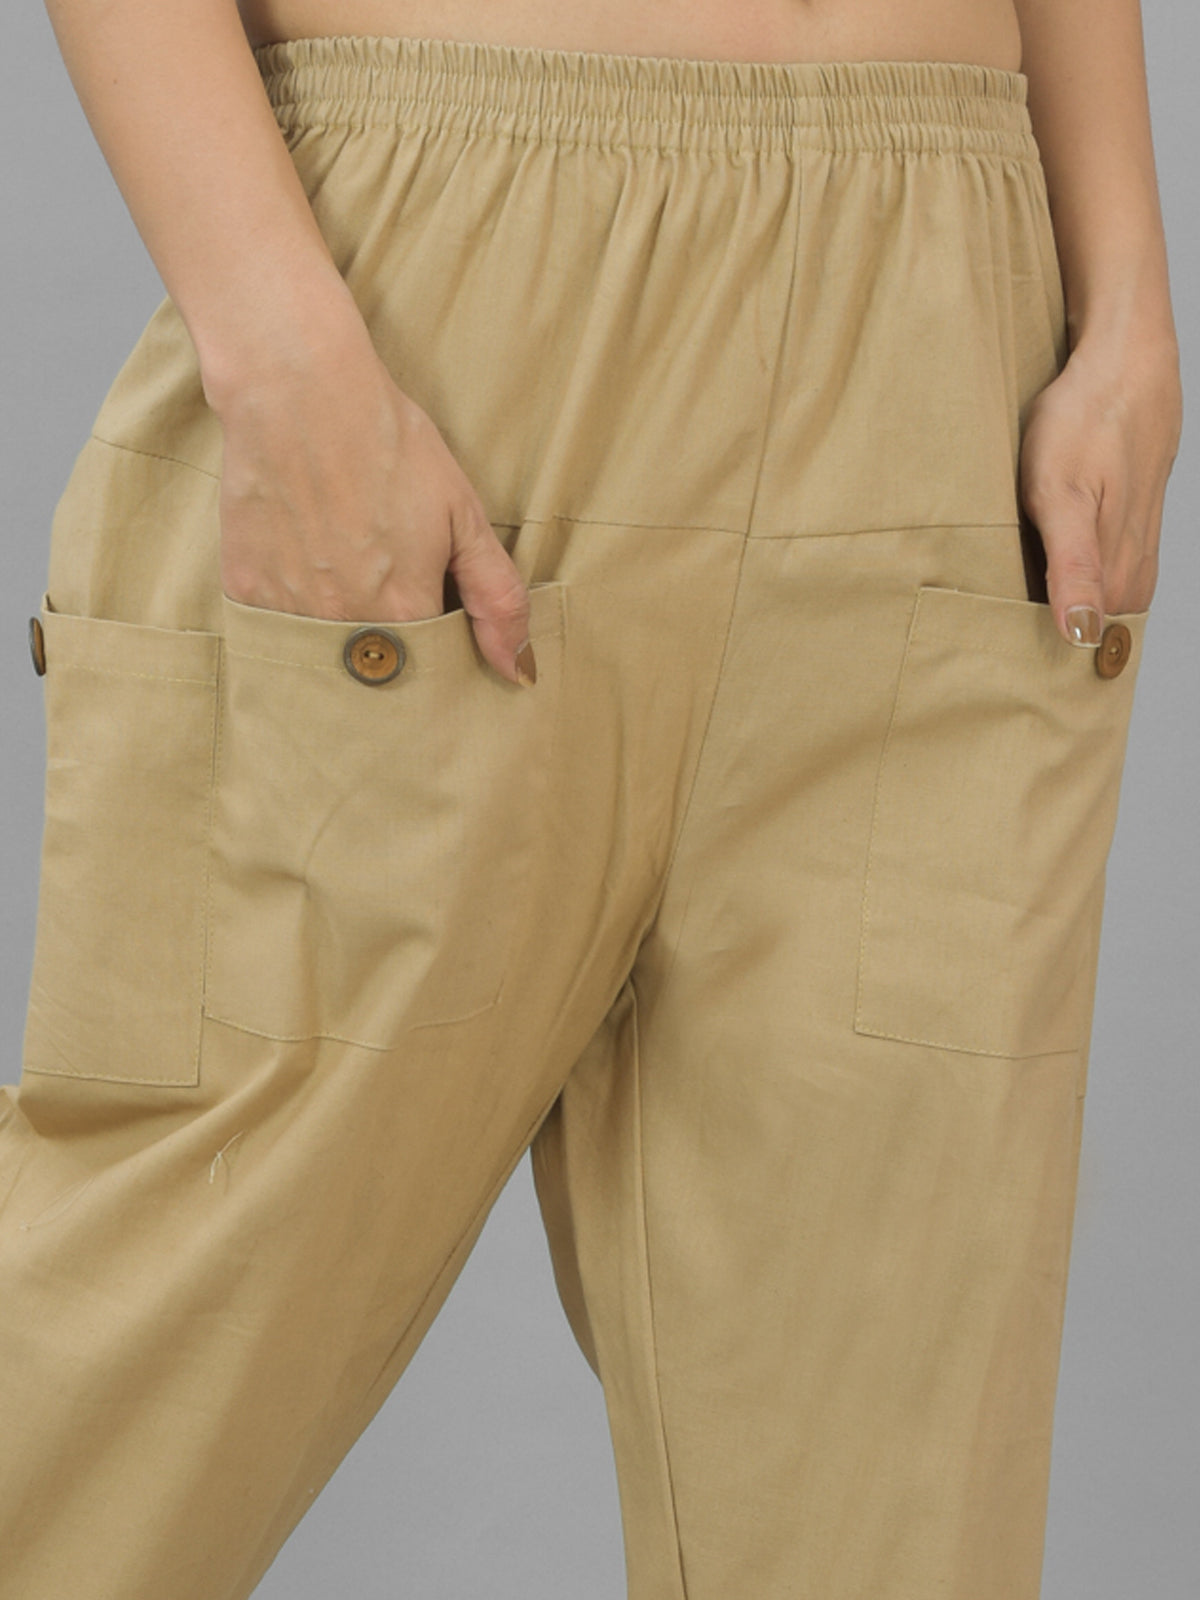 Quaclo Women's Beige Four Pocket Cotton Cargo Pants